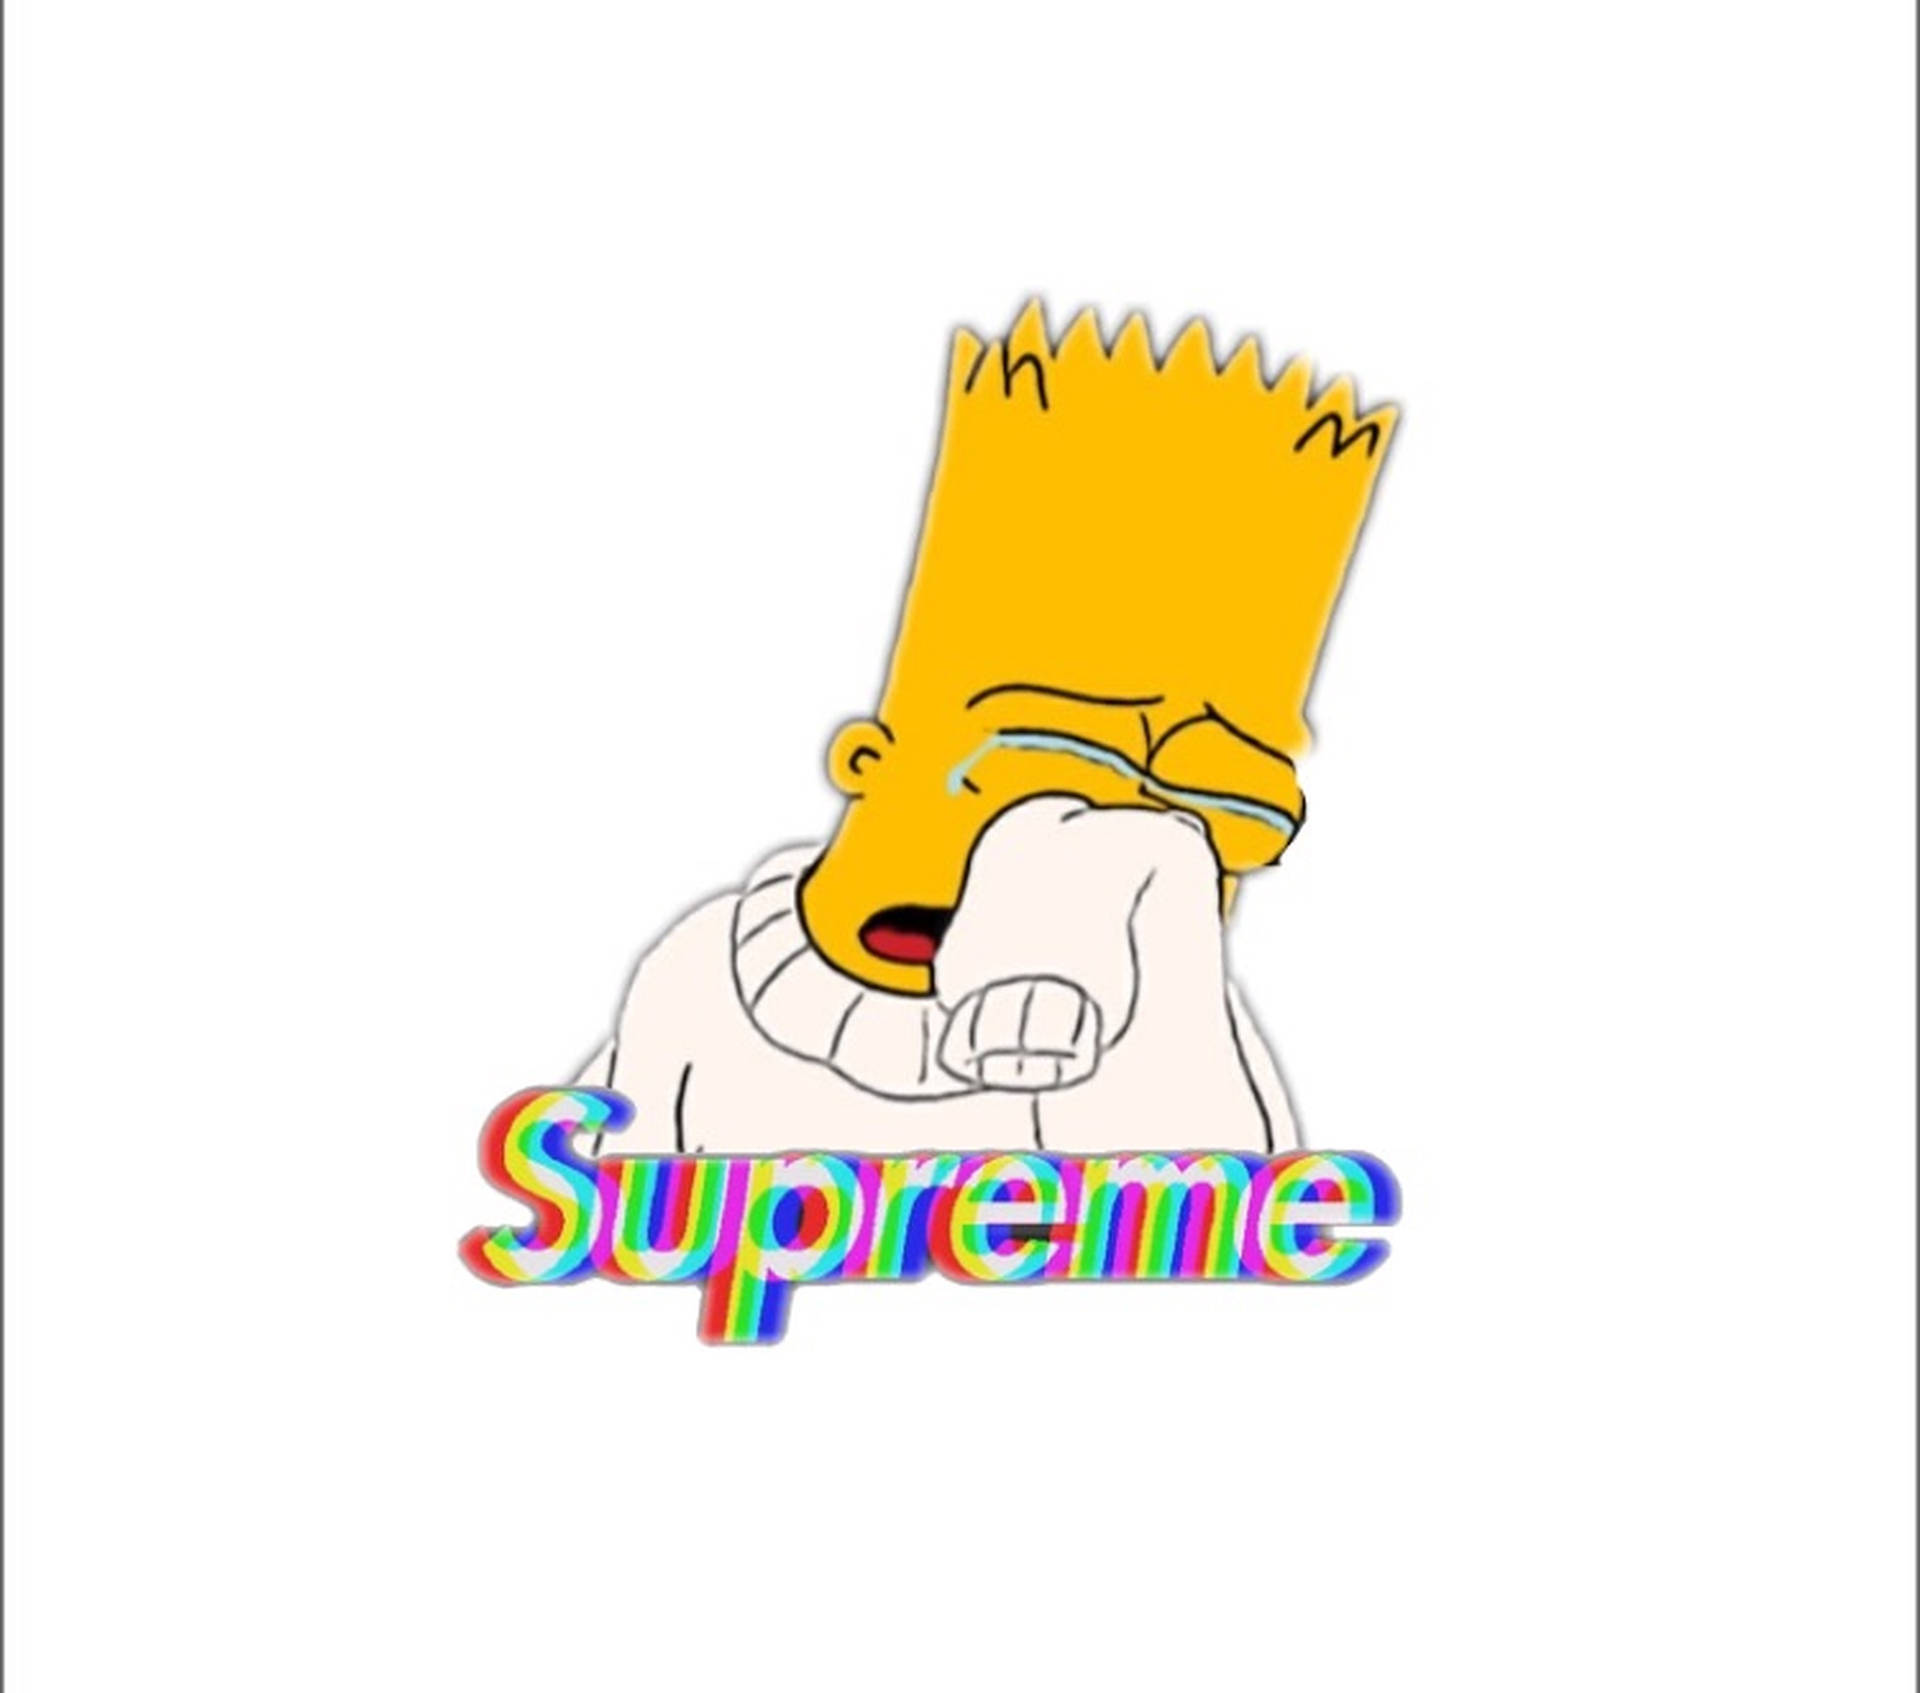 Bart Supreme Wallpapers